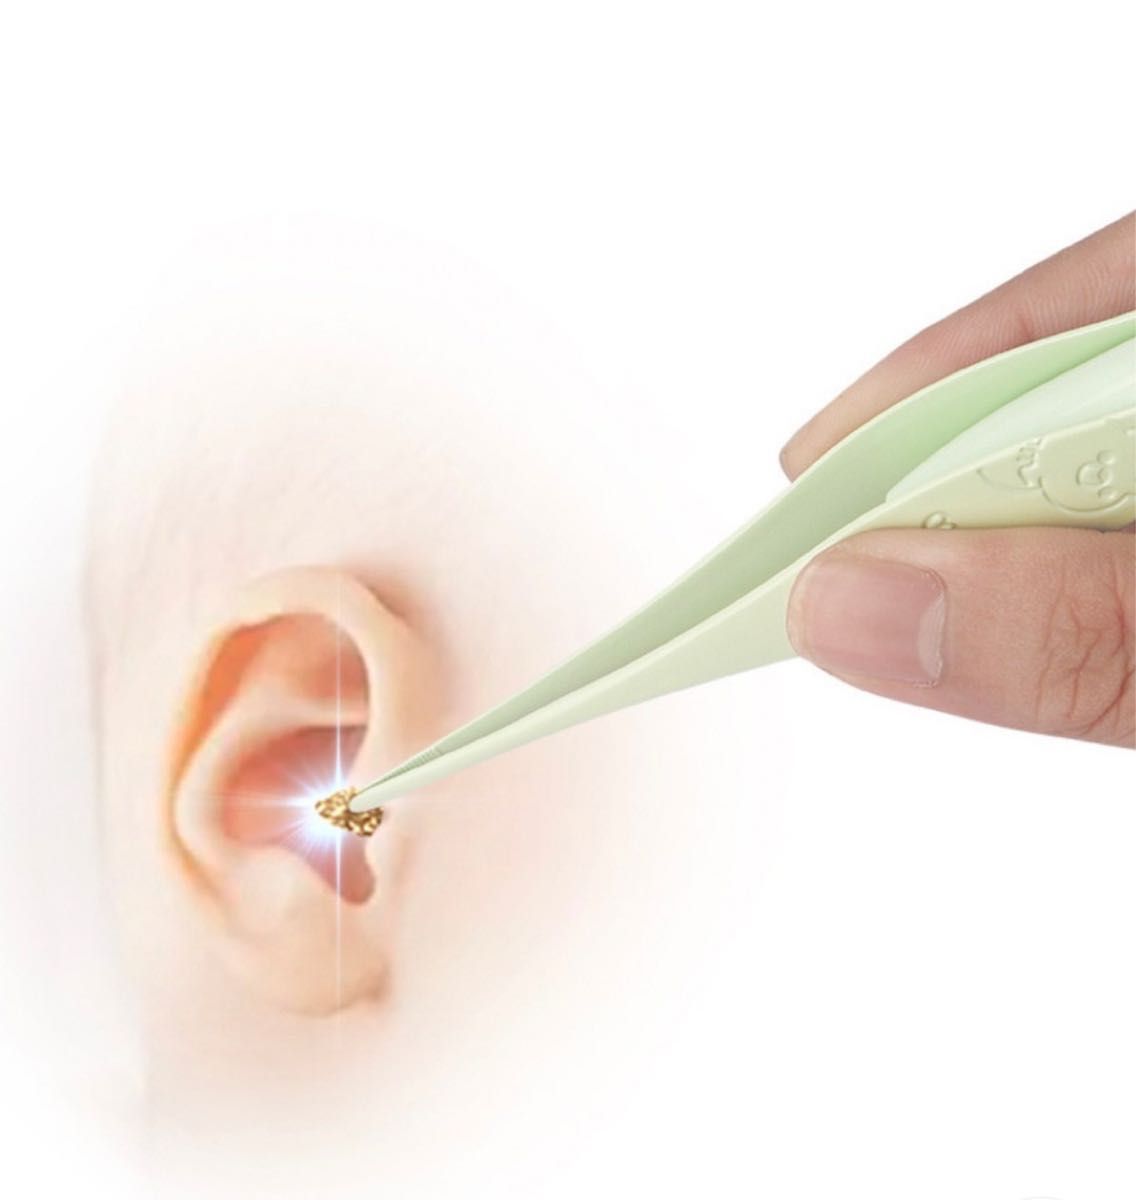 USB充電式光る耳かきLED ライト付きピンセット照明付き耳掃除耳かき子ども便利